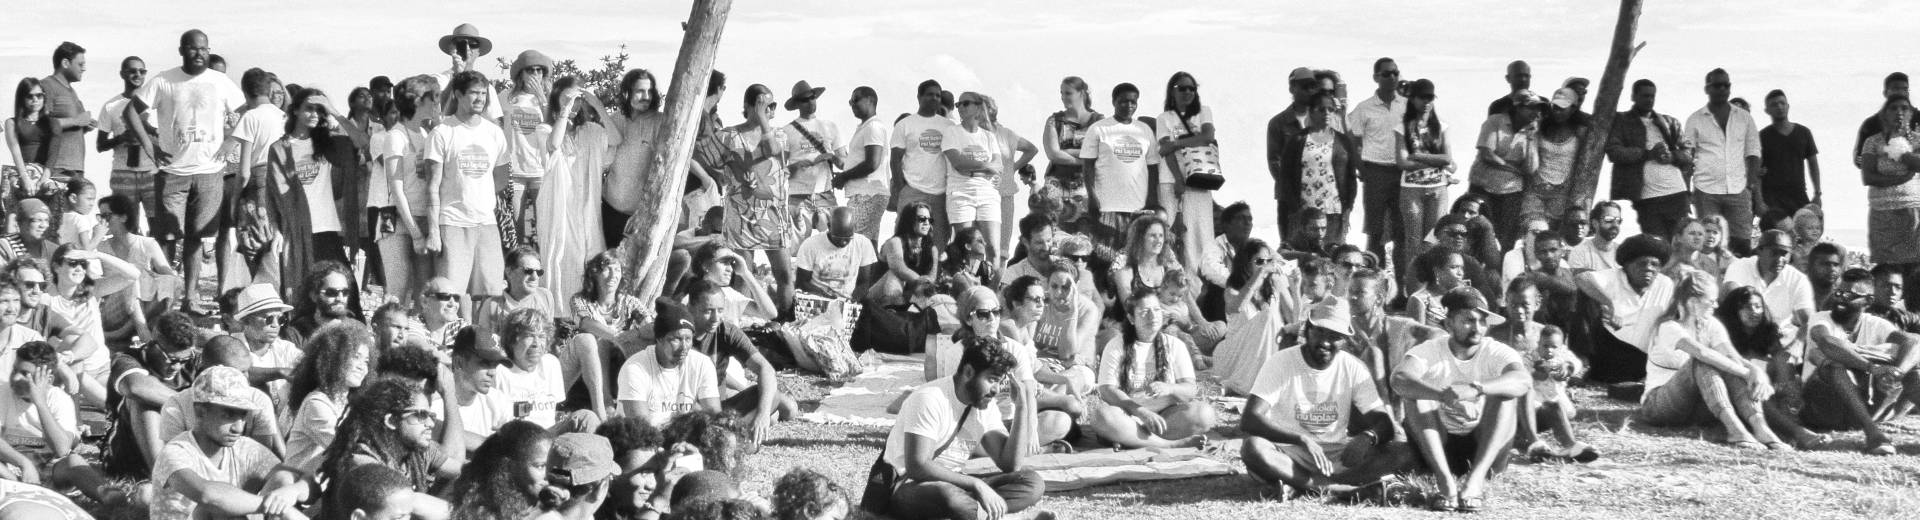 Mobilisation pour la plage de pomponette à l'Ile Maurice